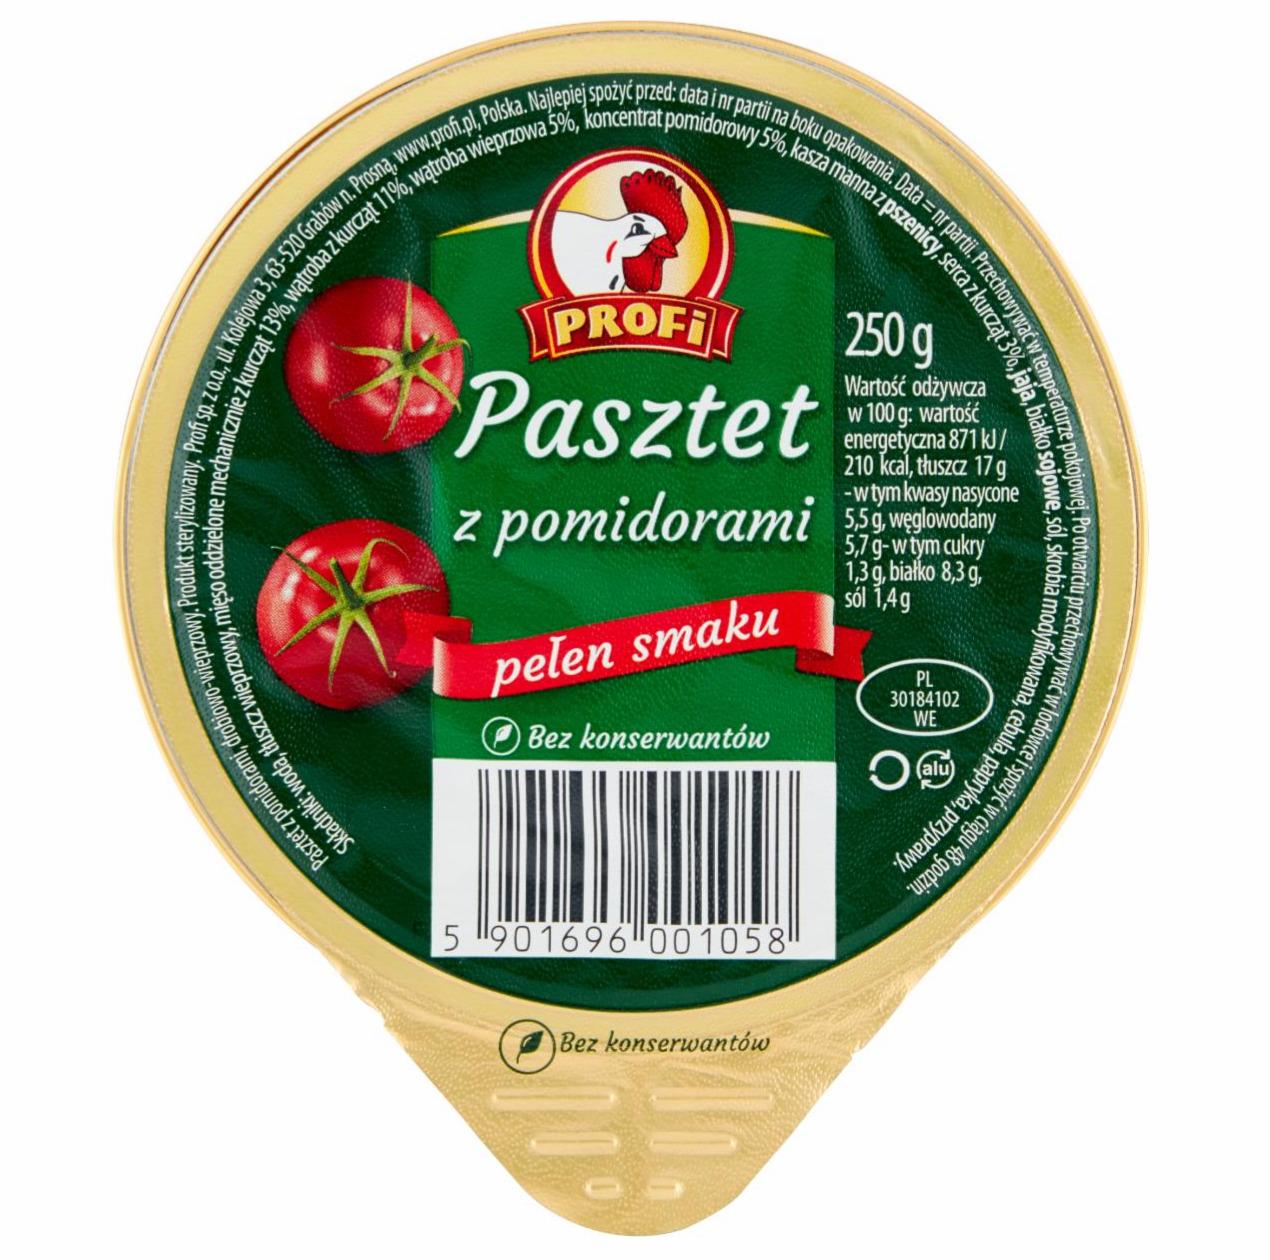 Zdjęcia - Profi Pasztet z pomidorami 250 g